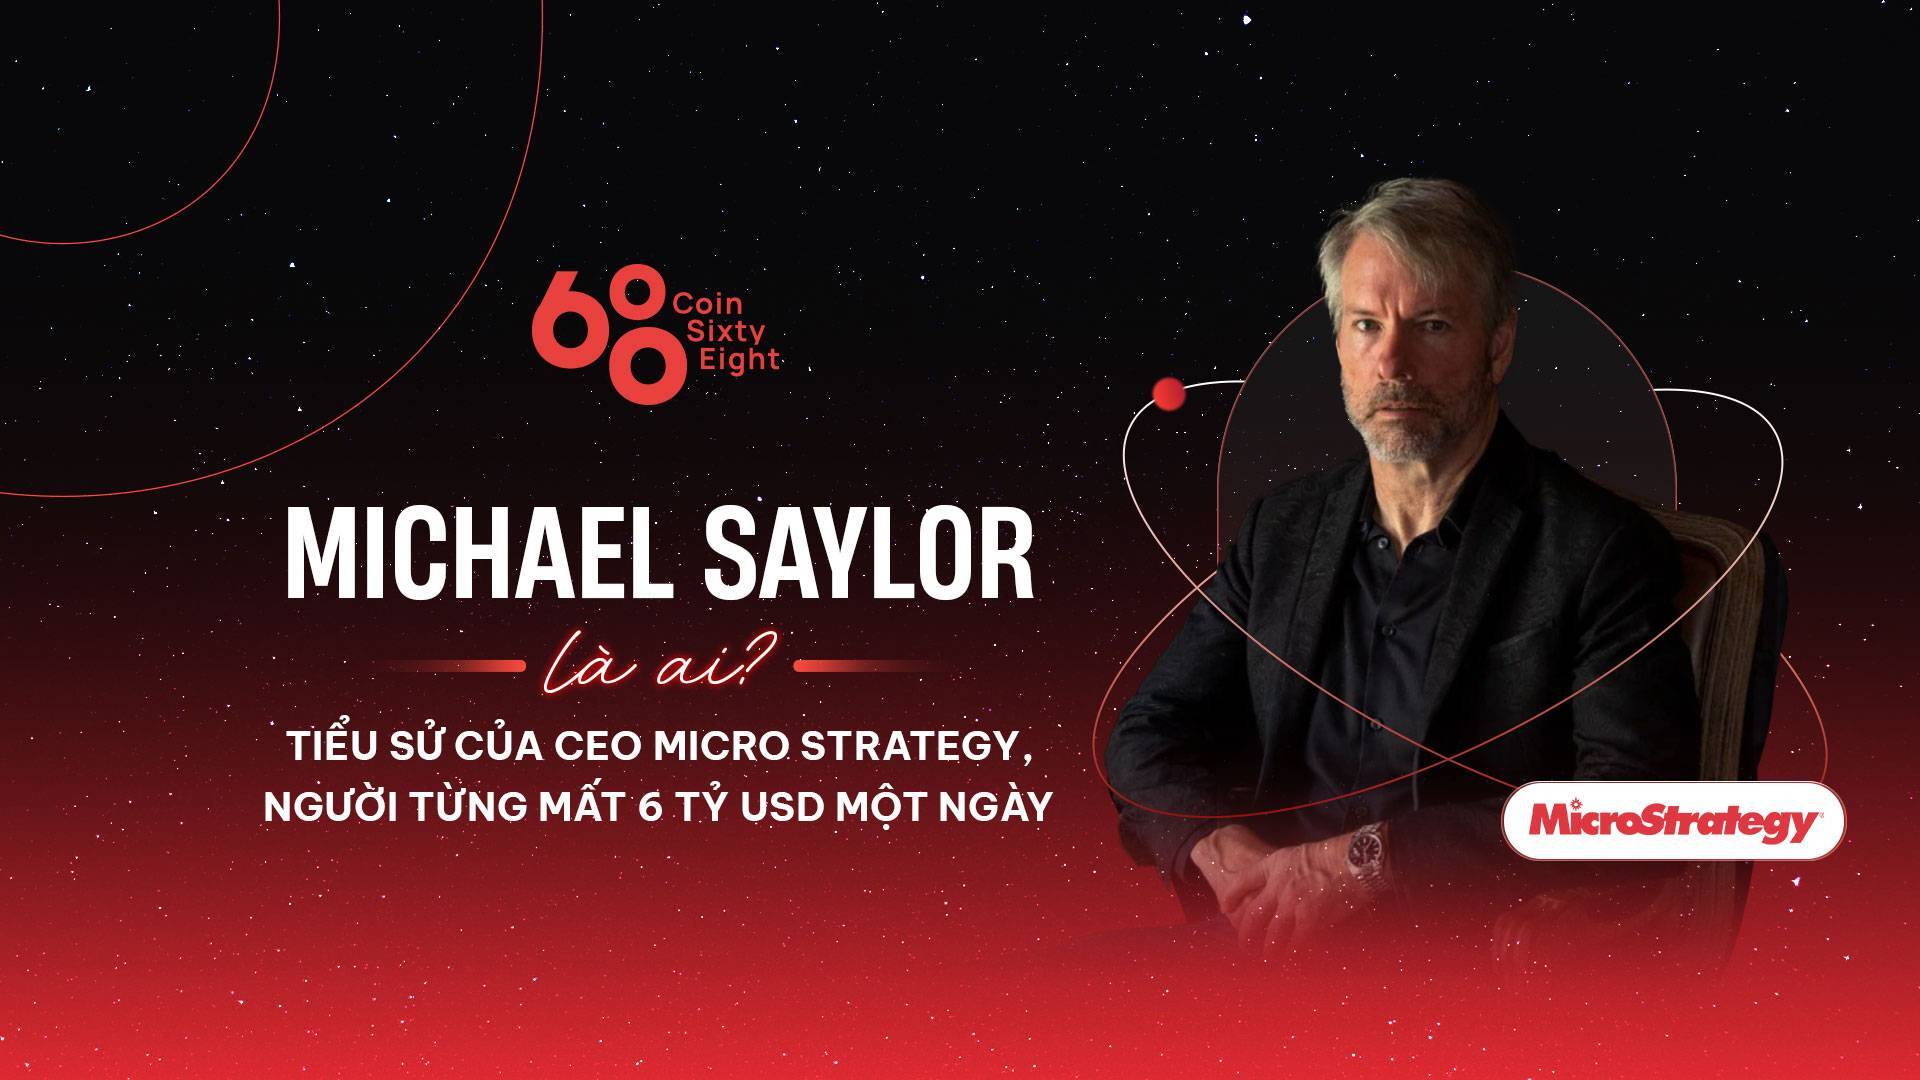 Michael Saylor Là Ai Tiểu Sử Của Ceo Microstrategy - Quỹ Đầu Tư chịu Chơi Nhất Thị Trường Crypto